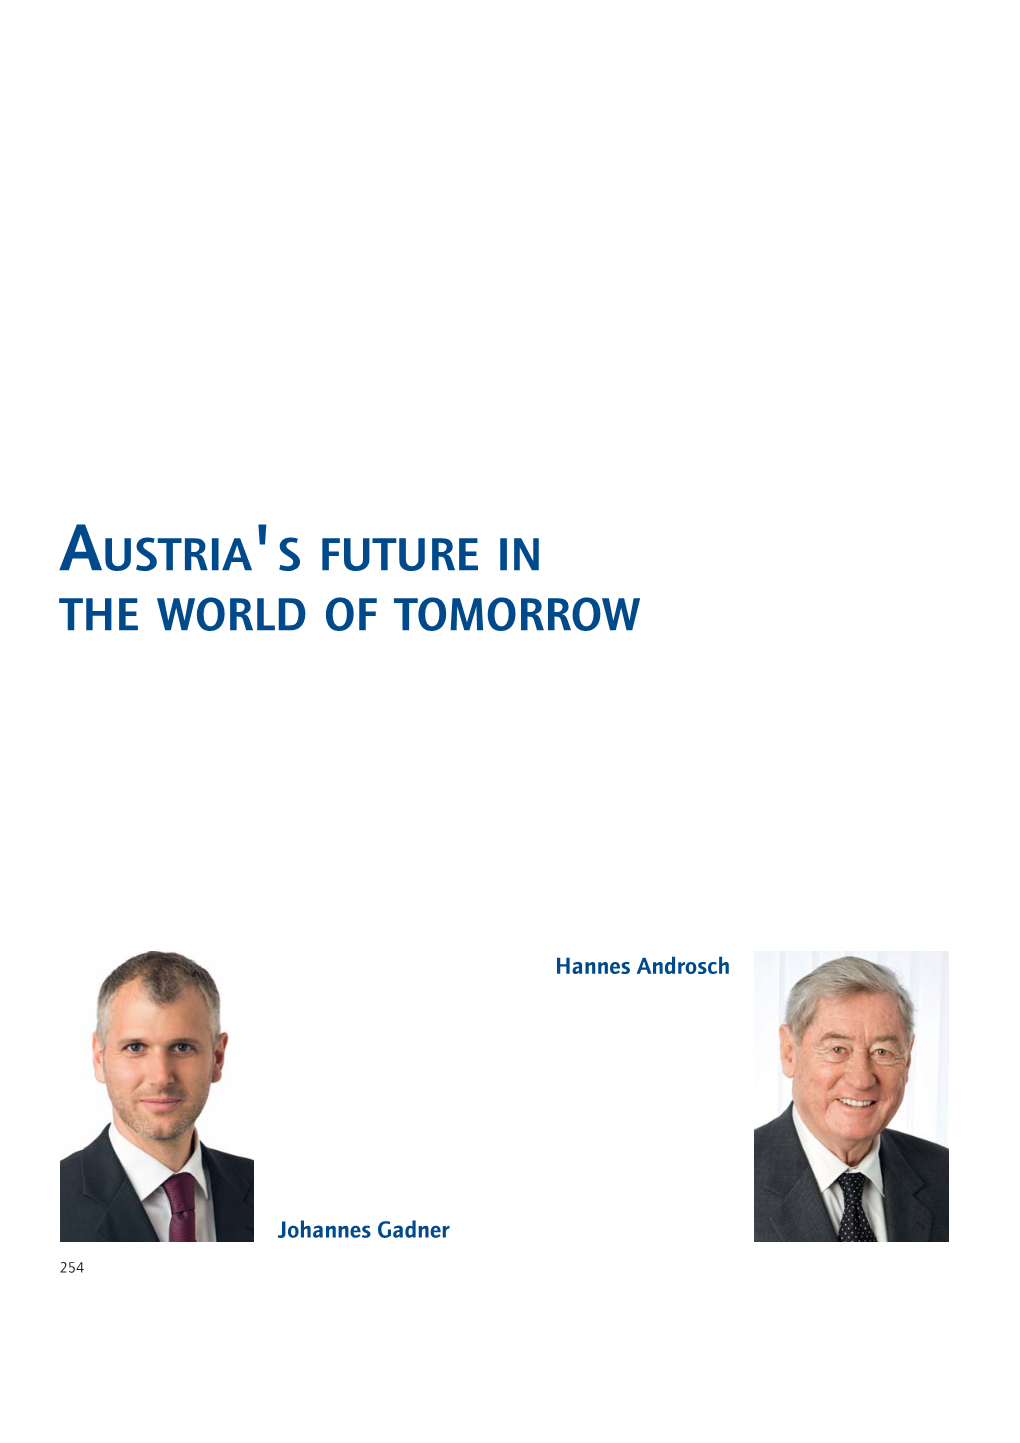 Austria's Future in the World of Tomorrow